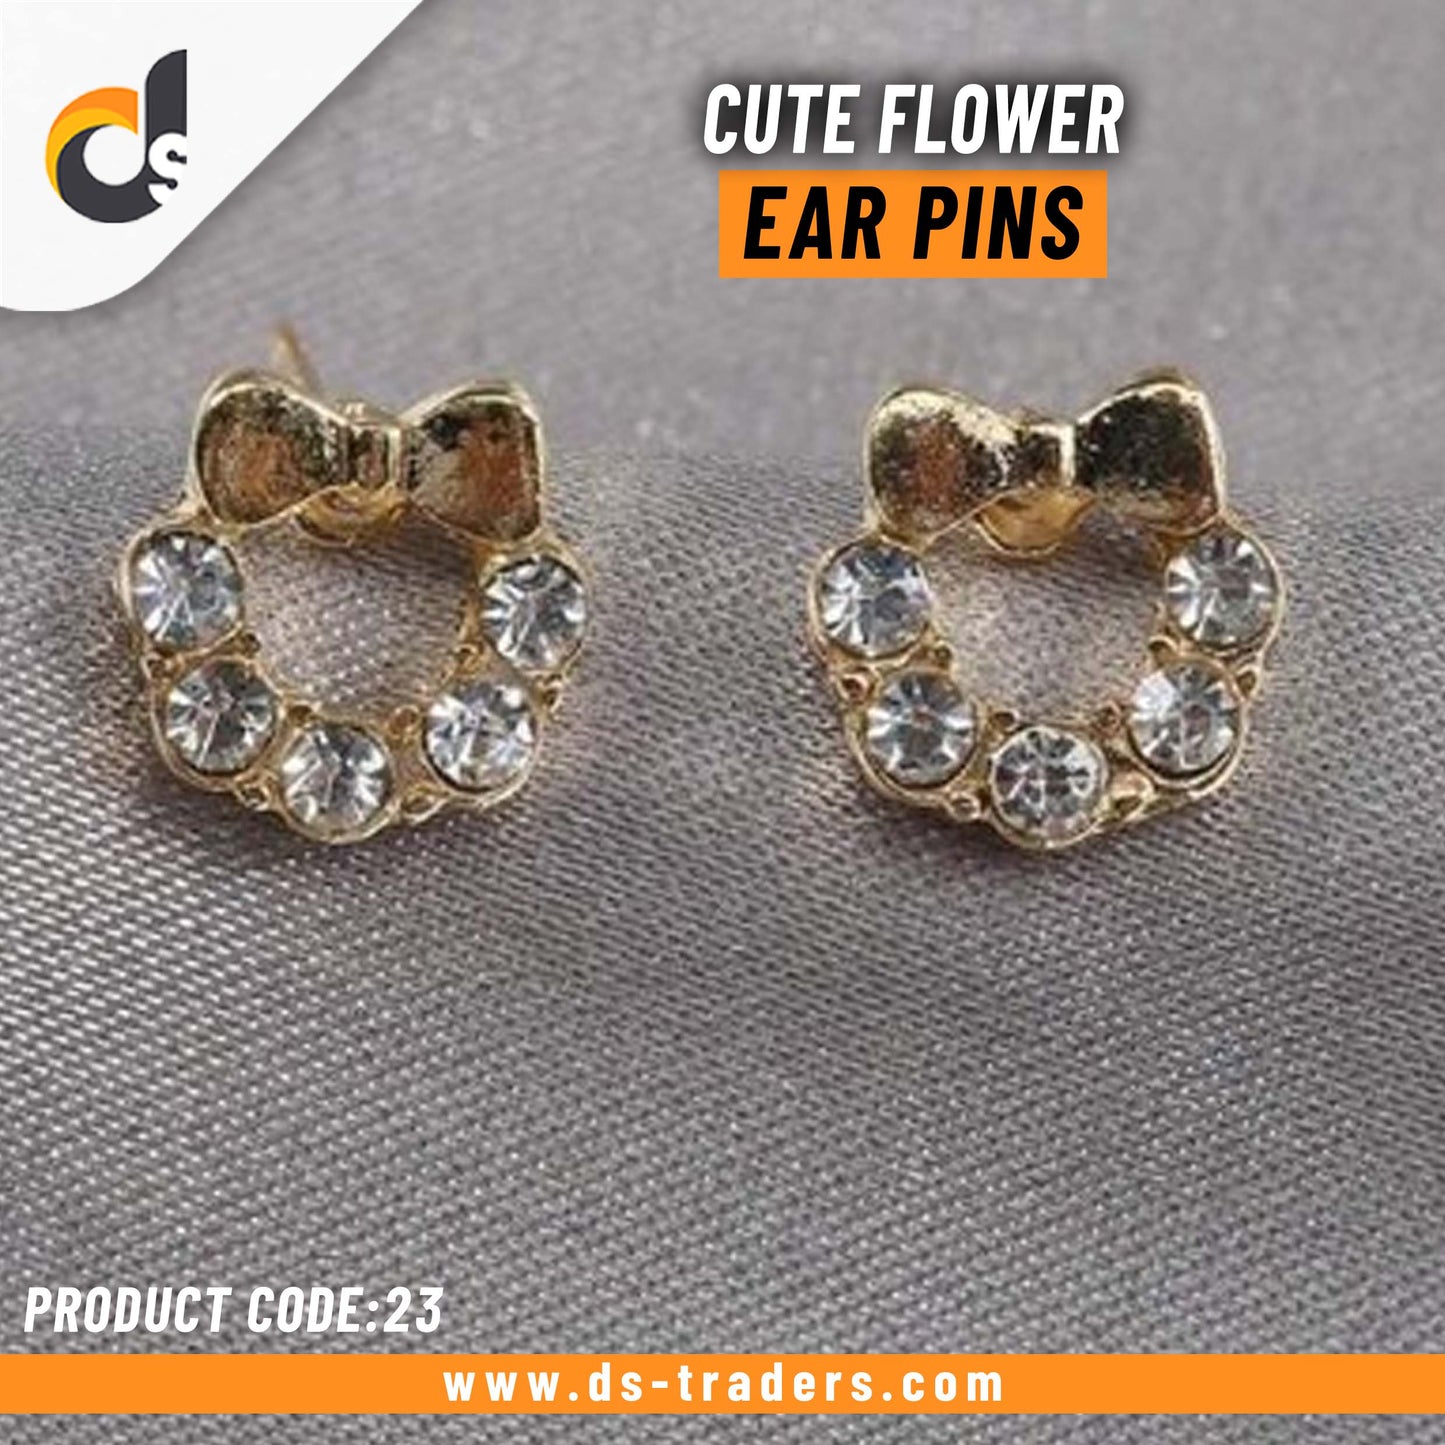 Cute Flower Ear Pins